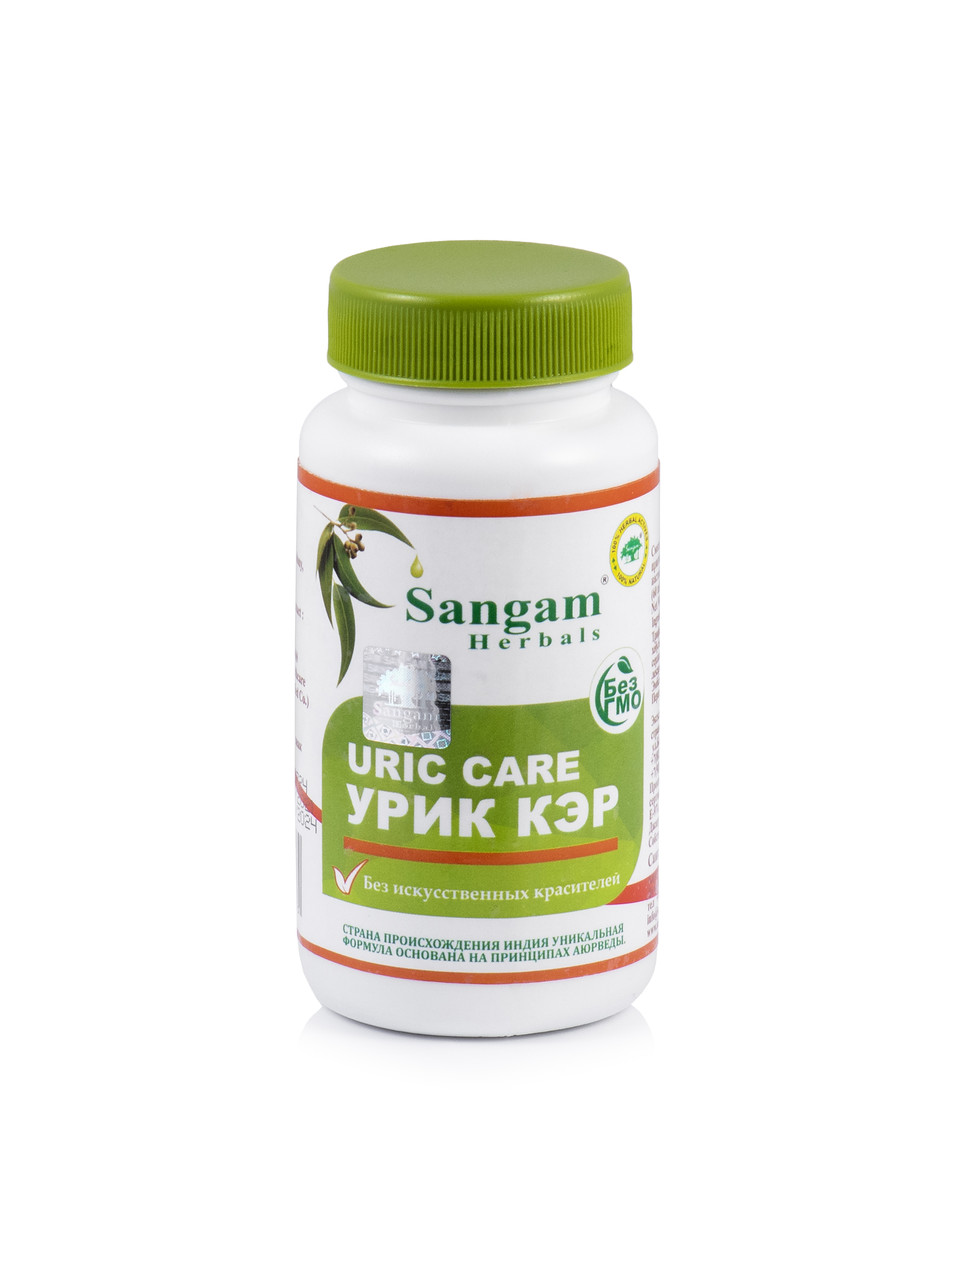 Урик Кэр,  60 таб. по 750 мг URIC CARE, Sangam Herbals,для поддержания нормального уровня мочевой кислоты